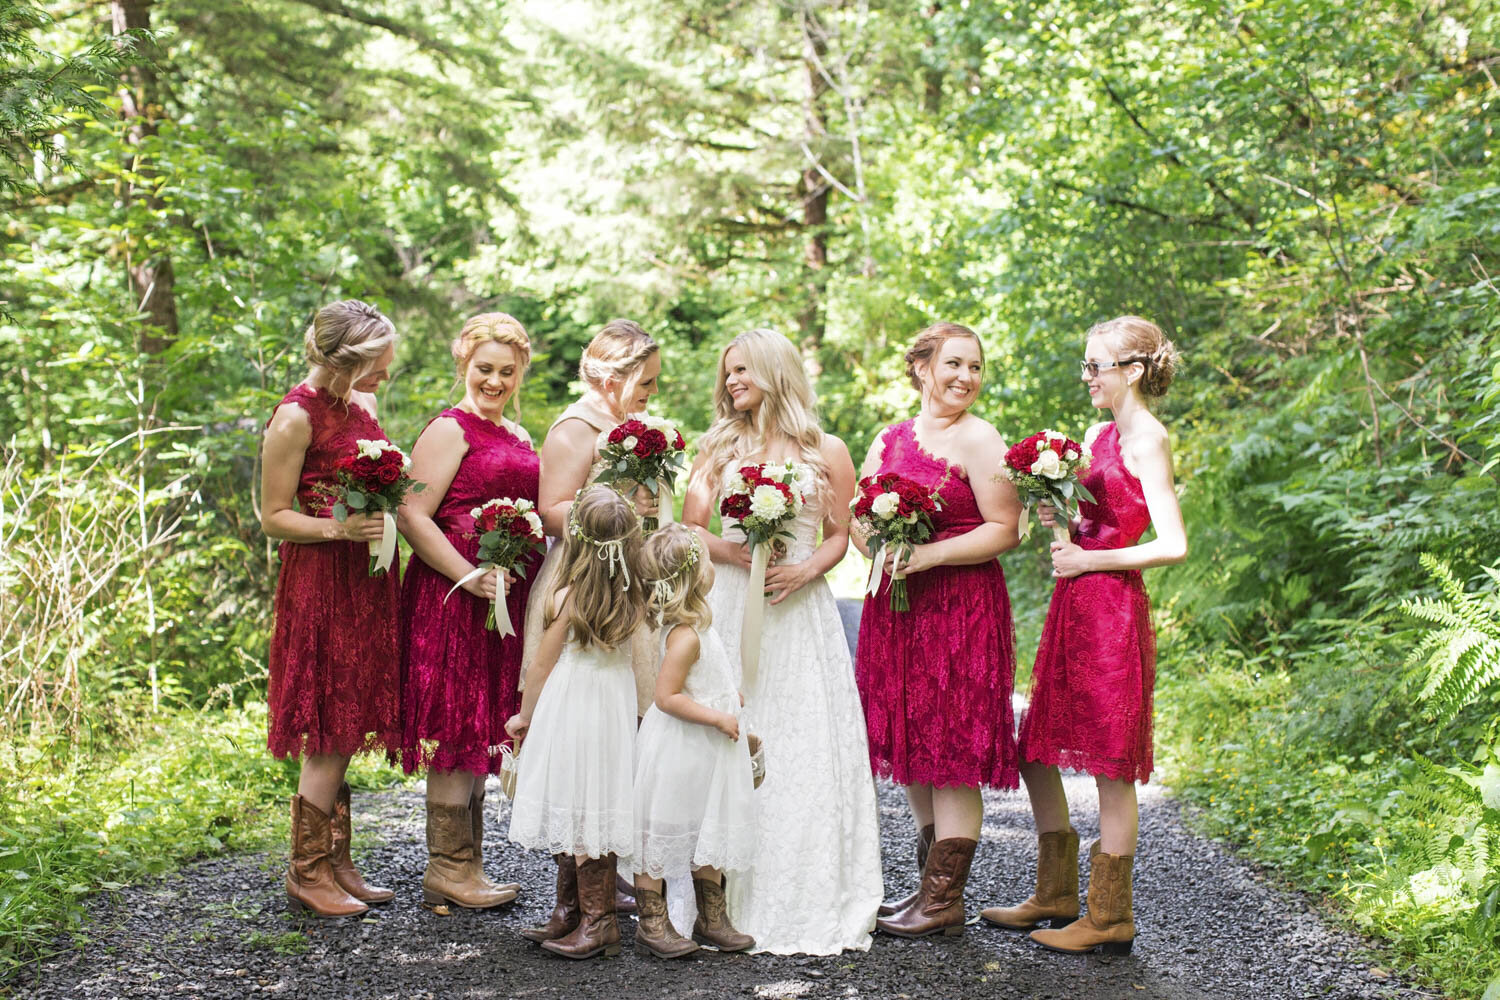 Oregon Wedding Venue | Fairytale Forest Wedding